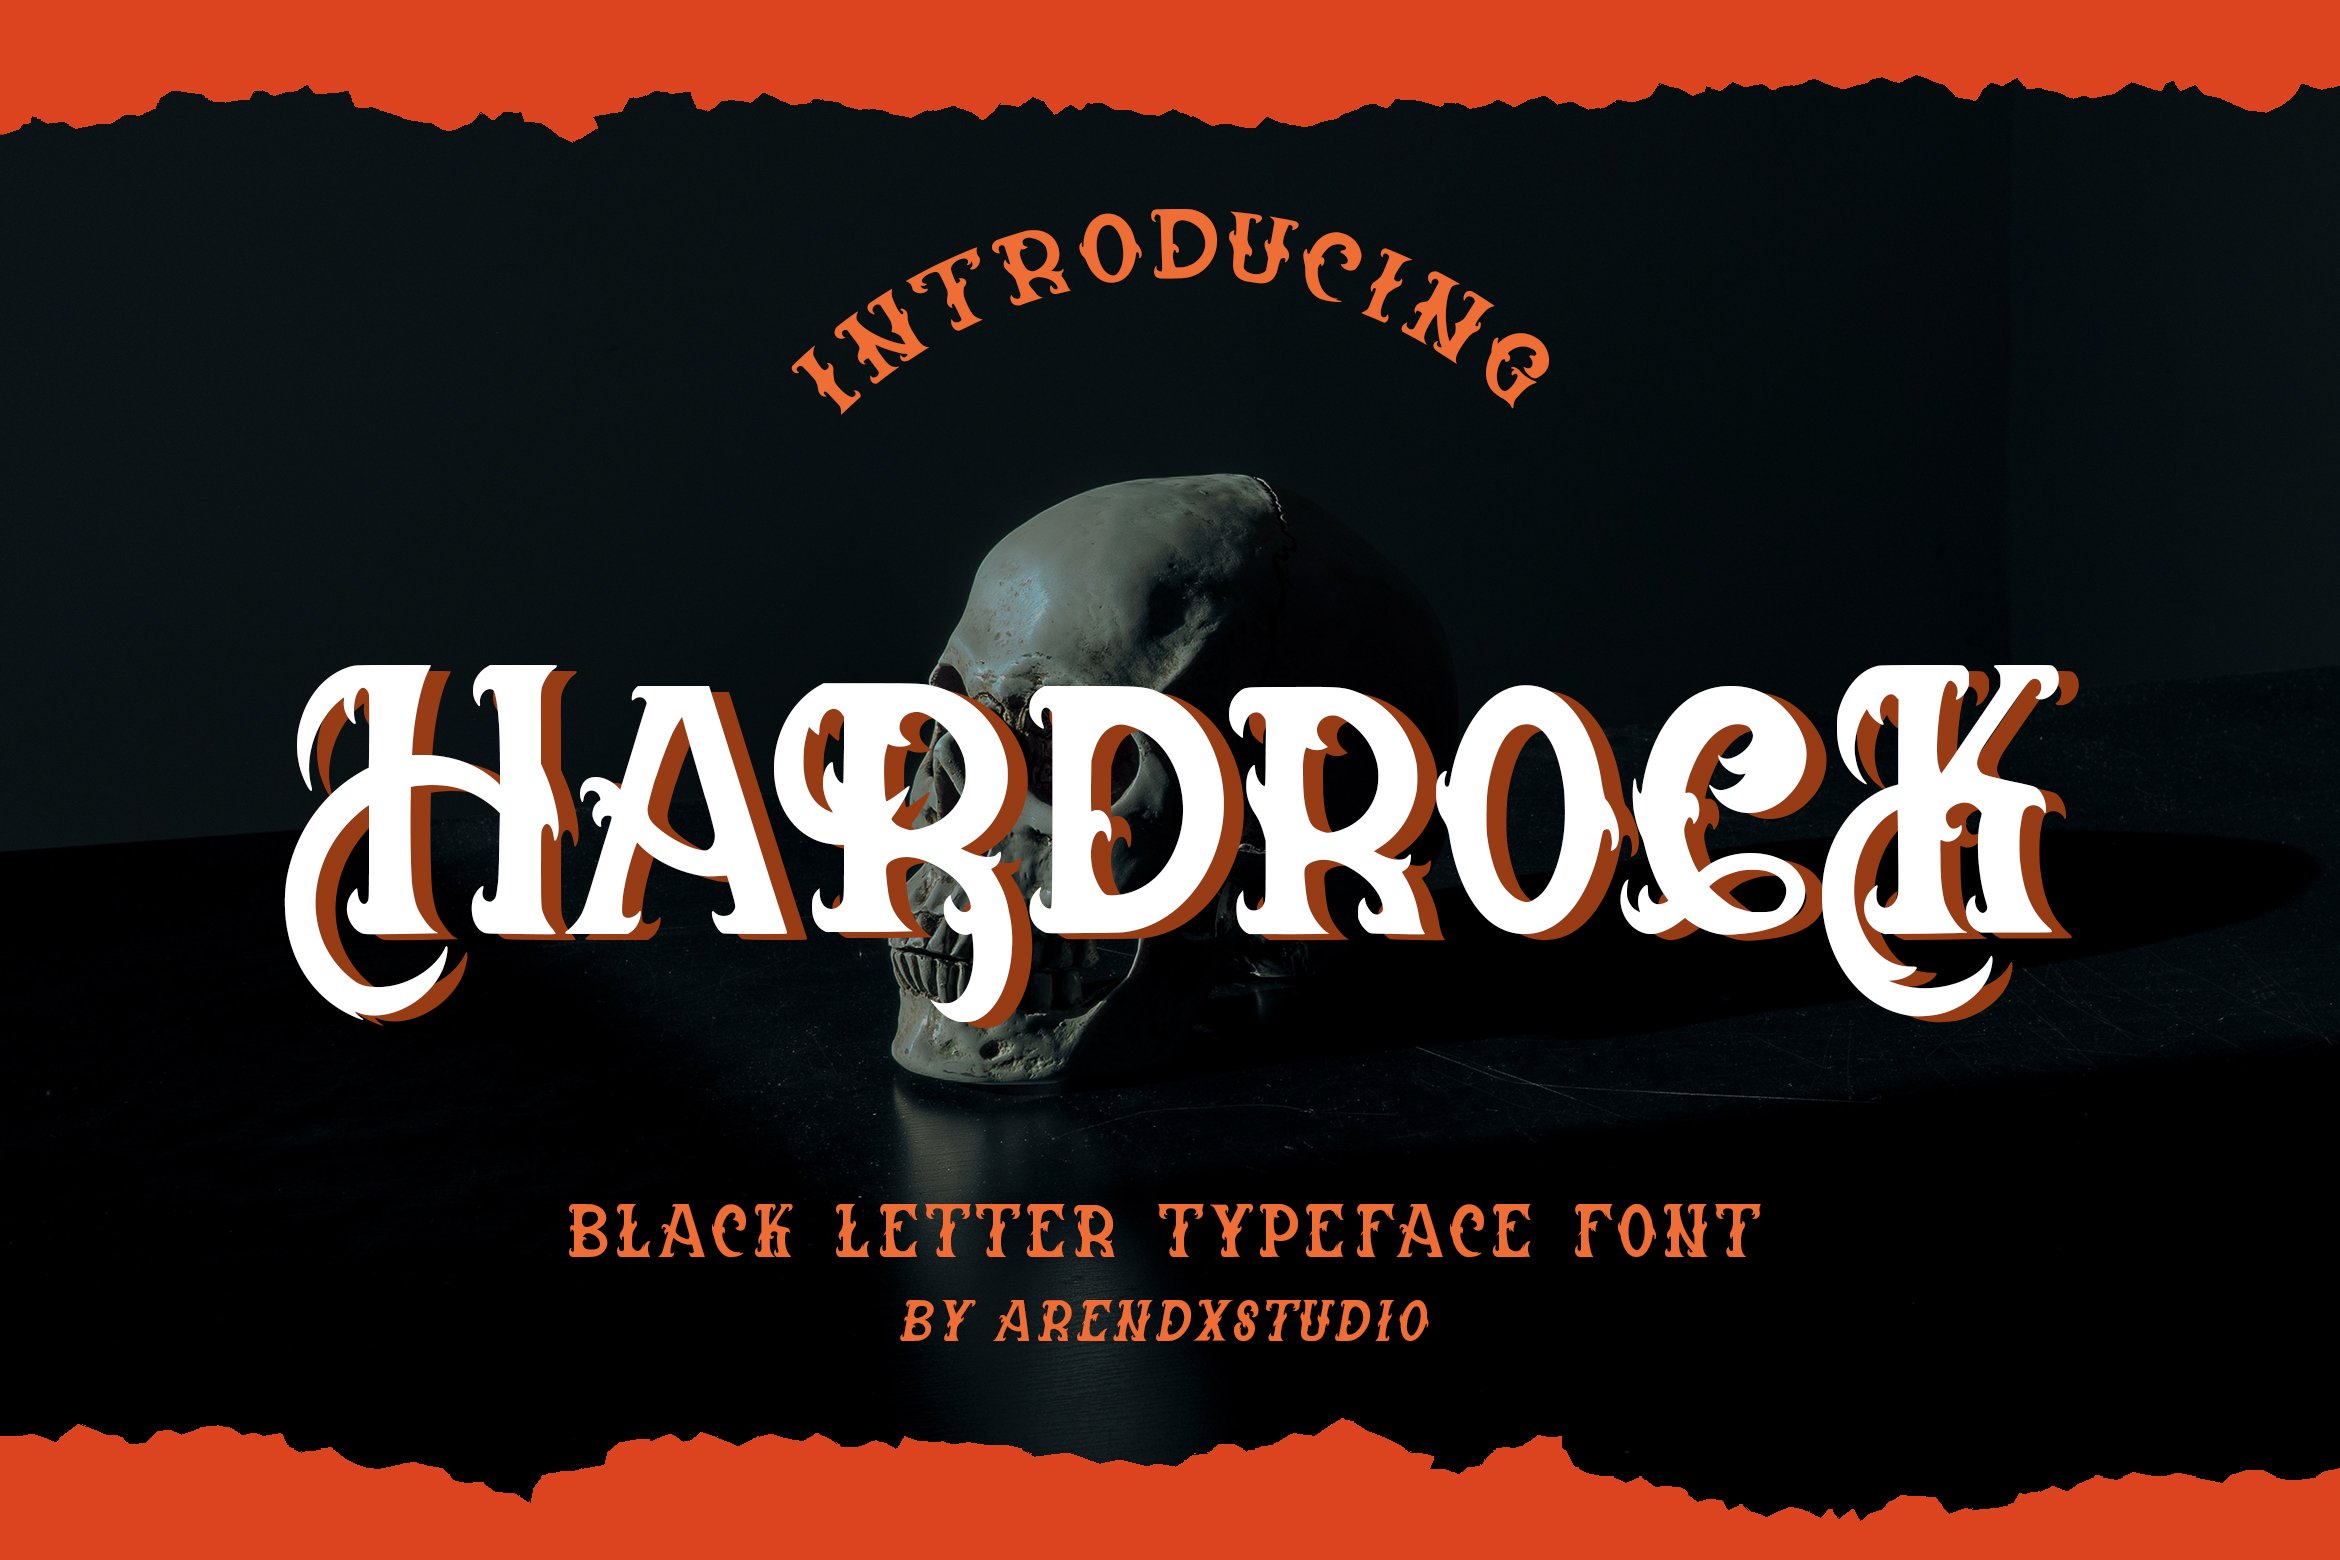 Hardrock - Blackletter Typeface Font cover image.